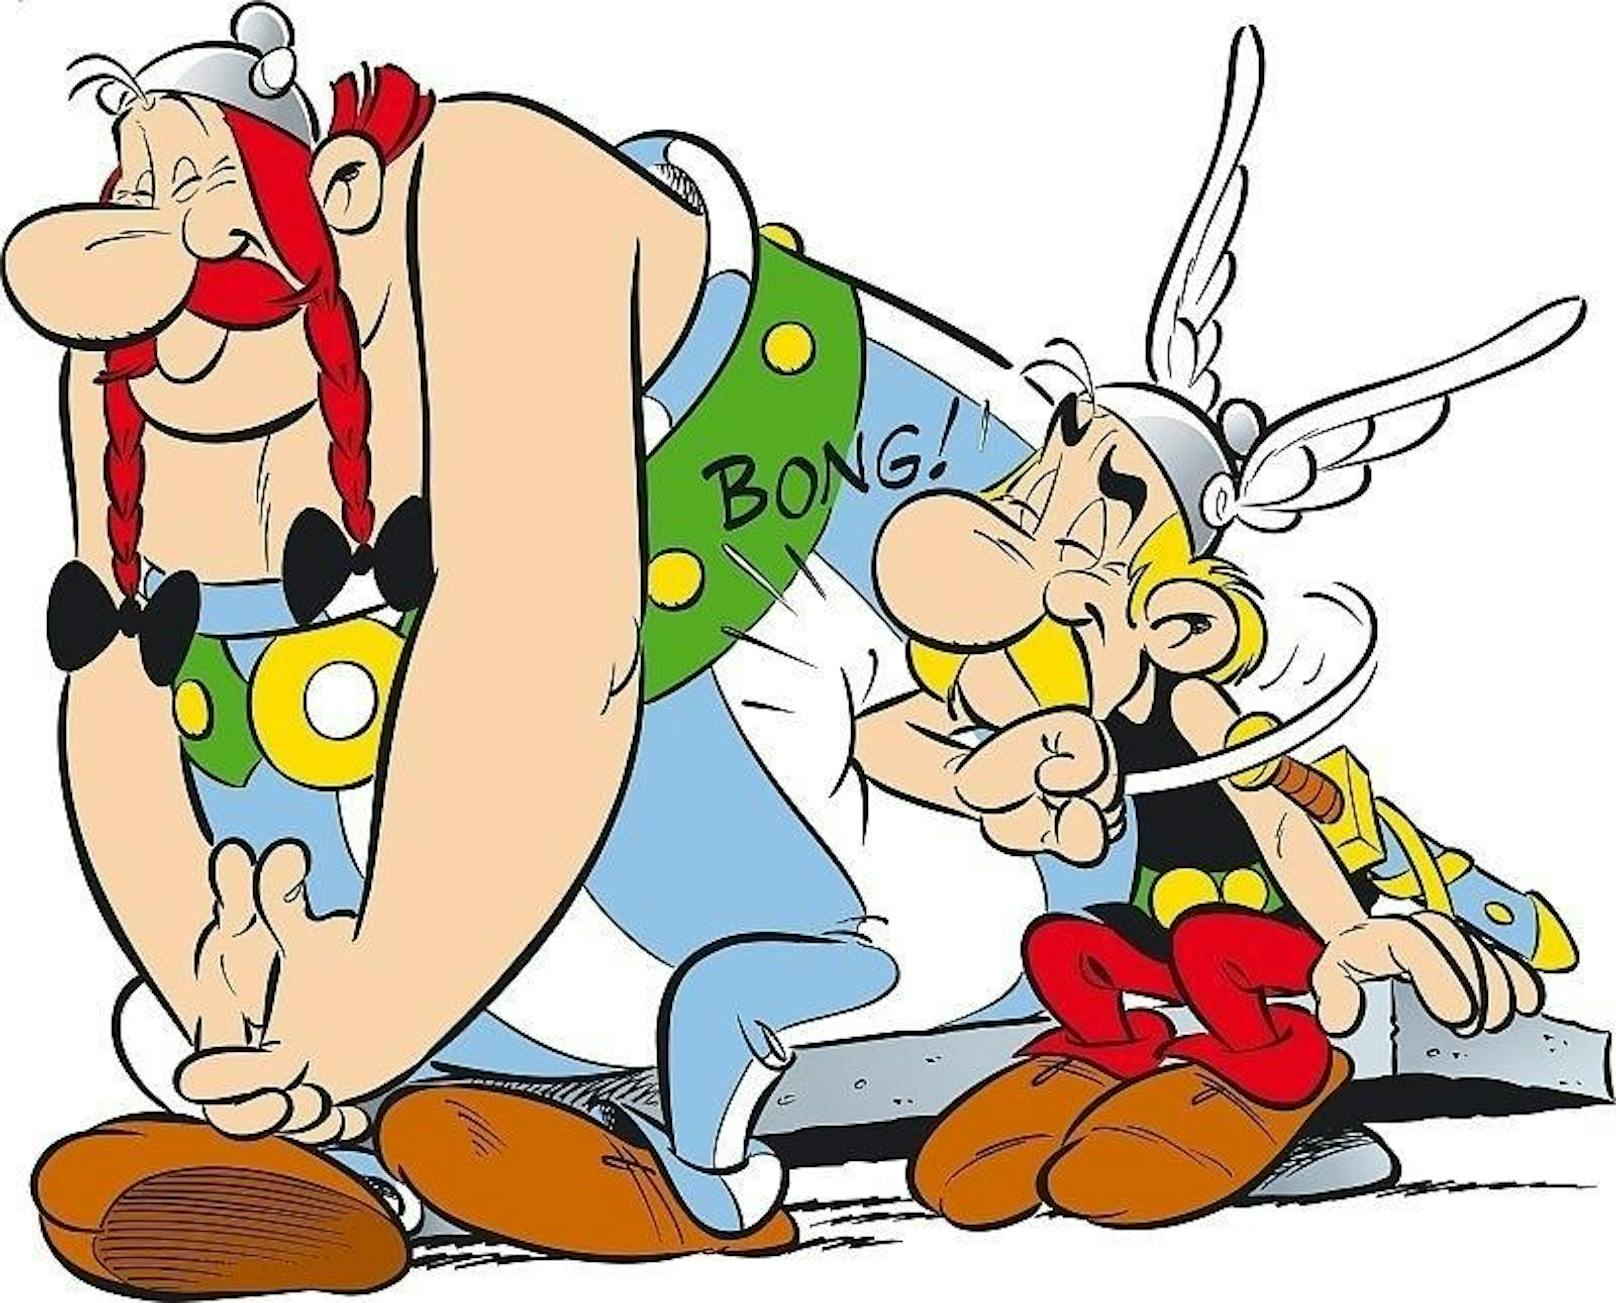 Eine neue Ära bricht an. An Asterix bei den Pikten (Band 35) arbeitet Albert Uderzo nicht mehr mit. Stattdessen zeichnet nun Didier Conrad (* 6. Mai 1959), der Text stammt von Jean-Yves Ferri (* 20. April 1959).